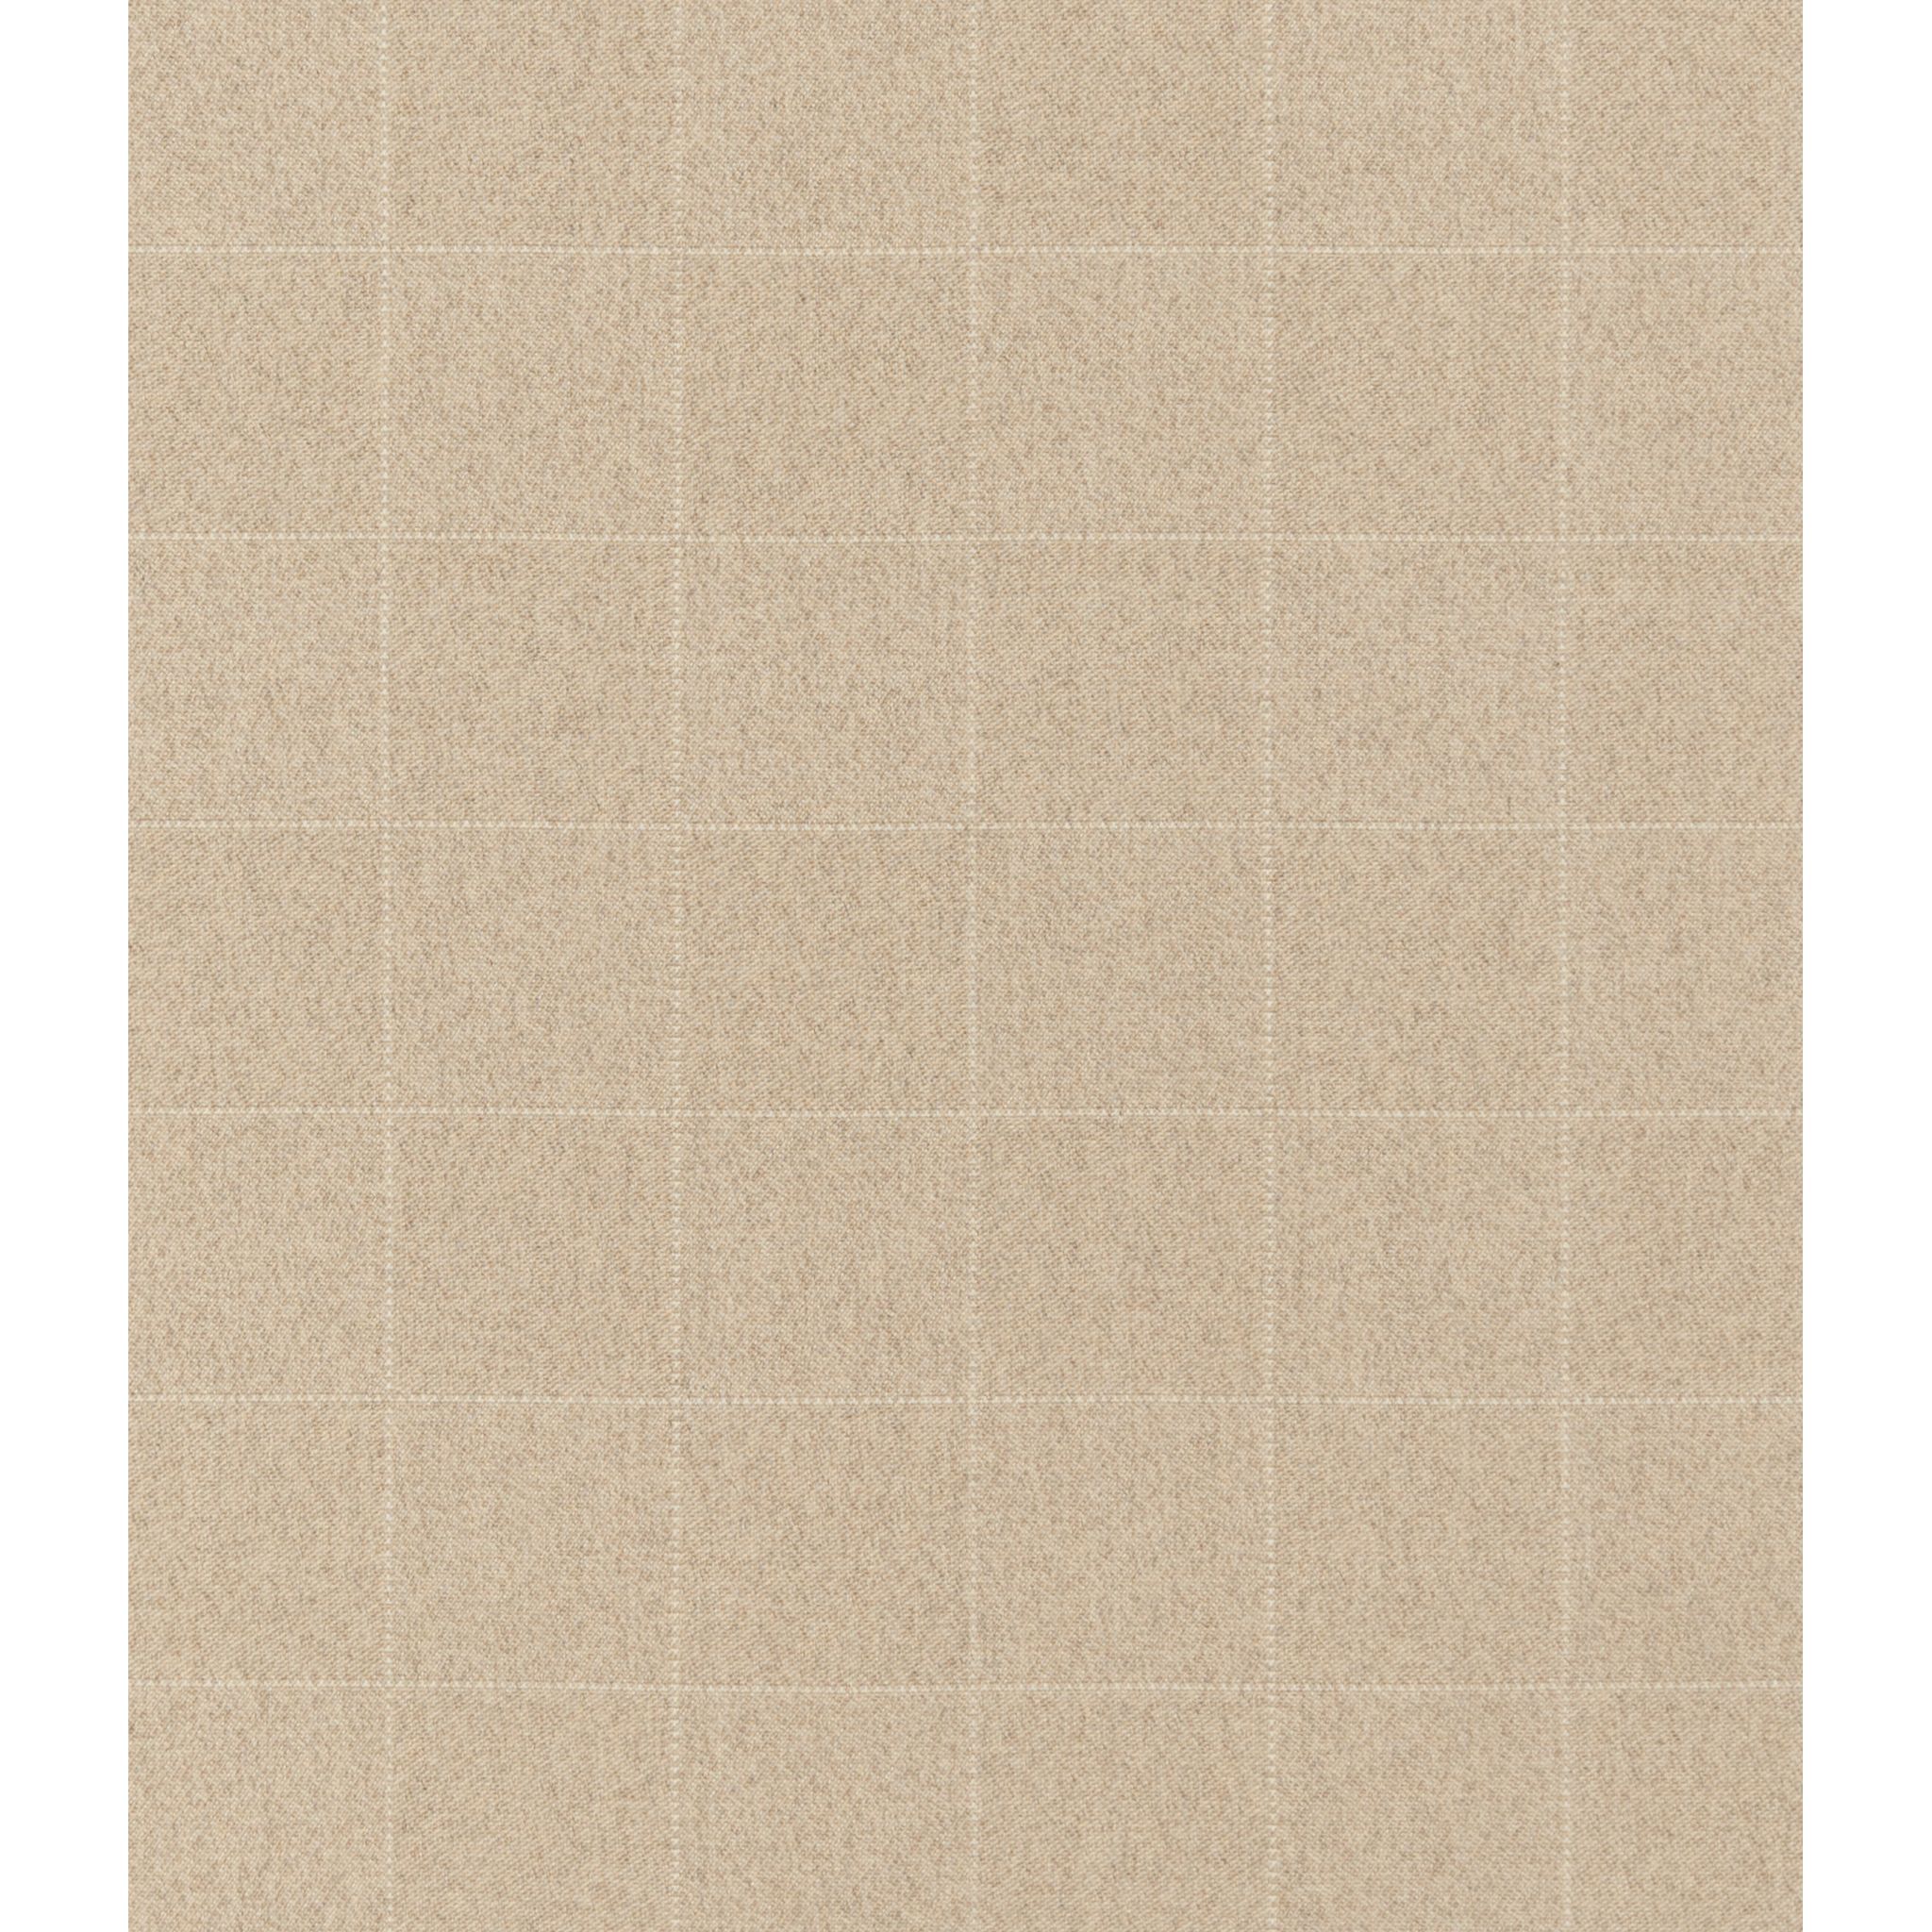 Checkmate Wilton Carpet, Sand Default Title